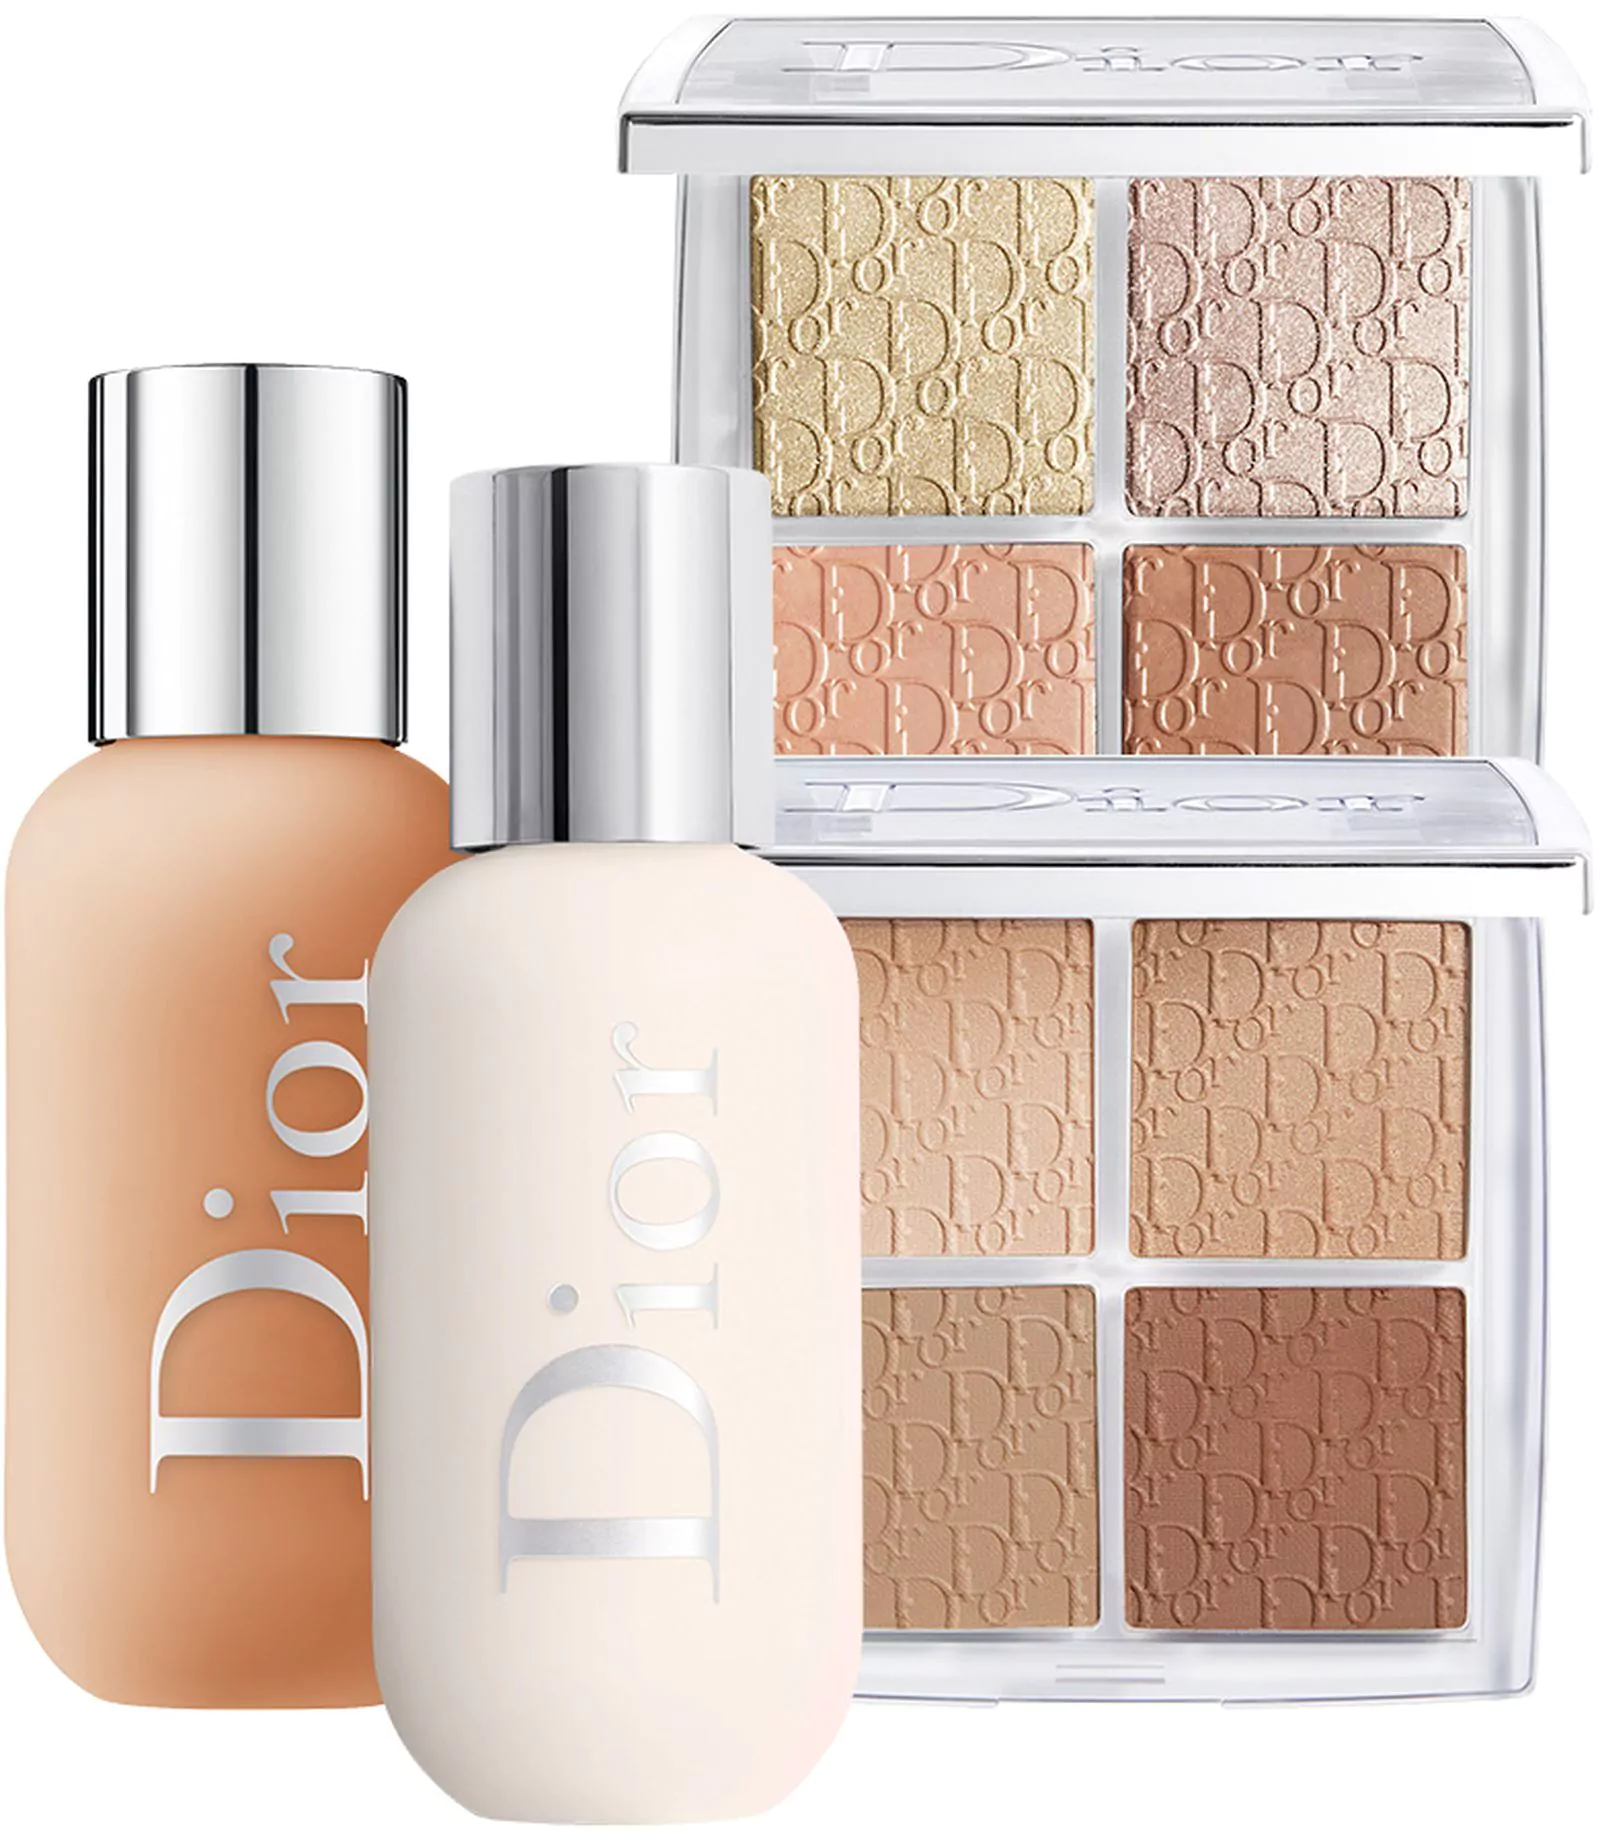 Dior Backstage Face & Body Foundation, Dior Backstage Face & Body Primer, Dior Backstage Glow, Dior Backstage Contour